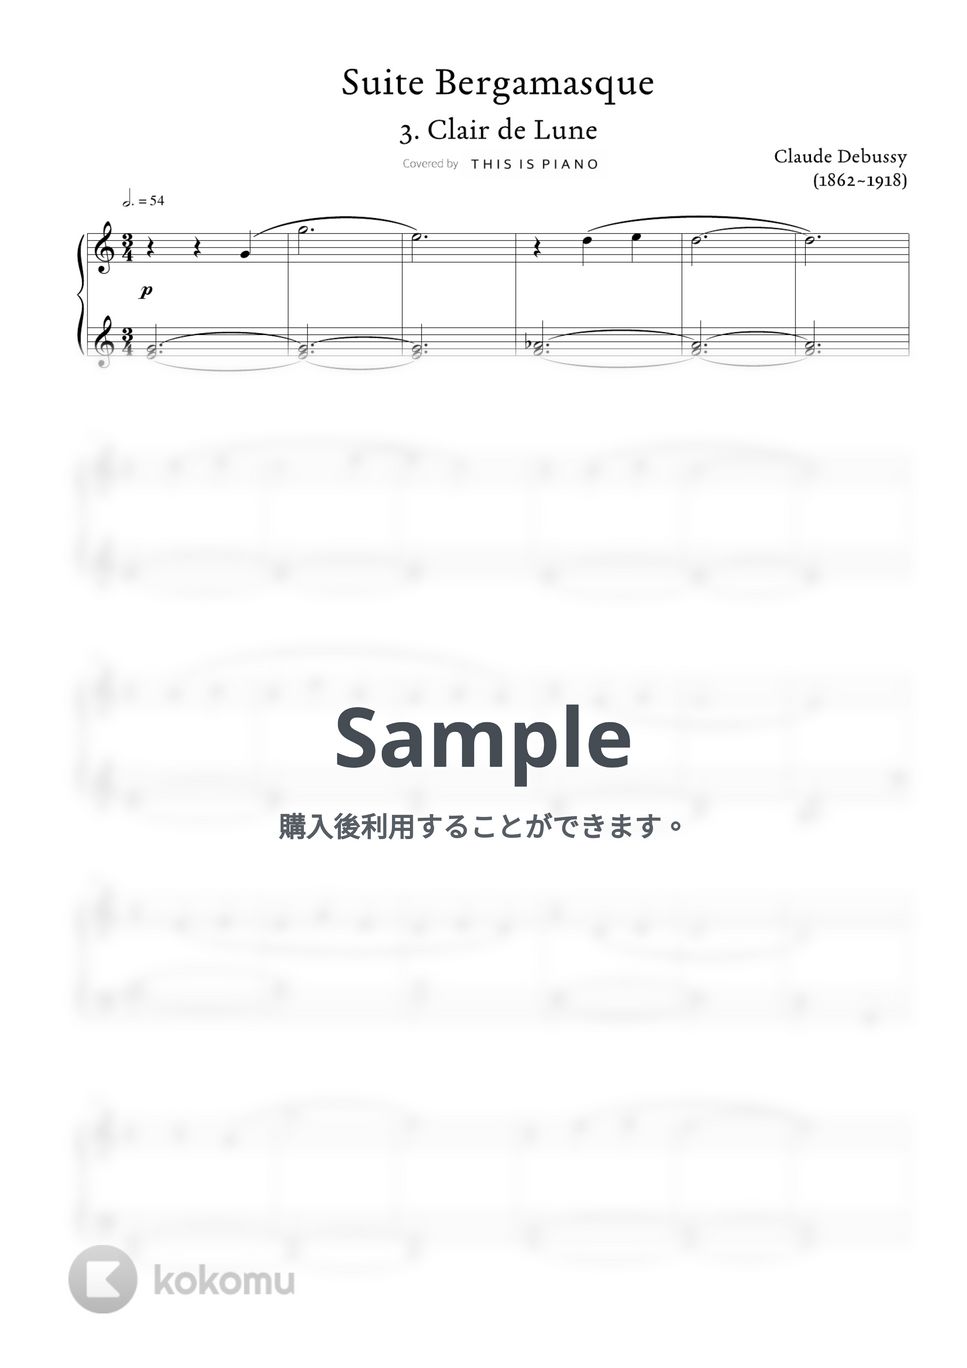 ドビュッシー - 月光 (初級バージョン) by THIS IS PIANO